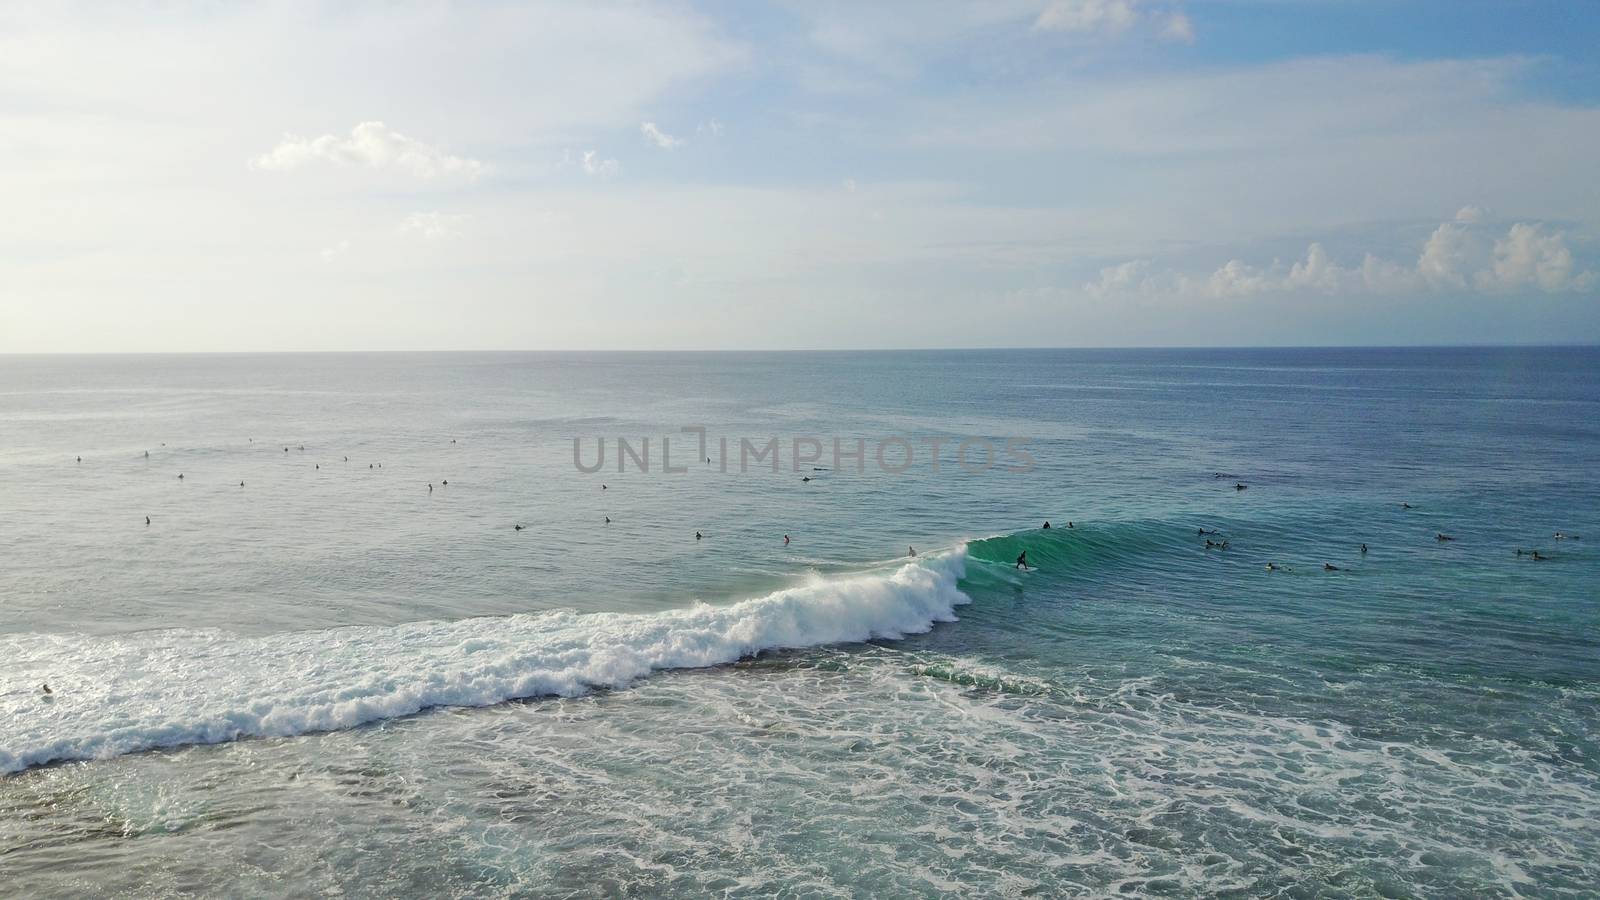 Surfers catch waves on the beach of Bali, Uluwatu by Passcal